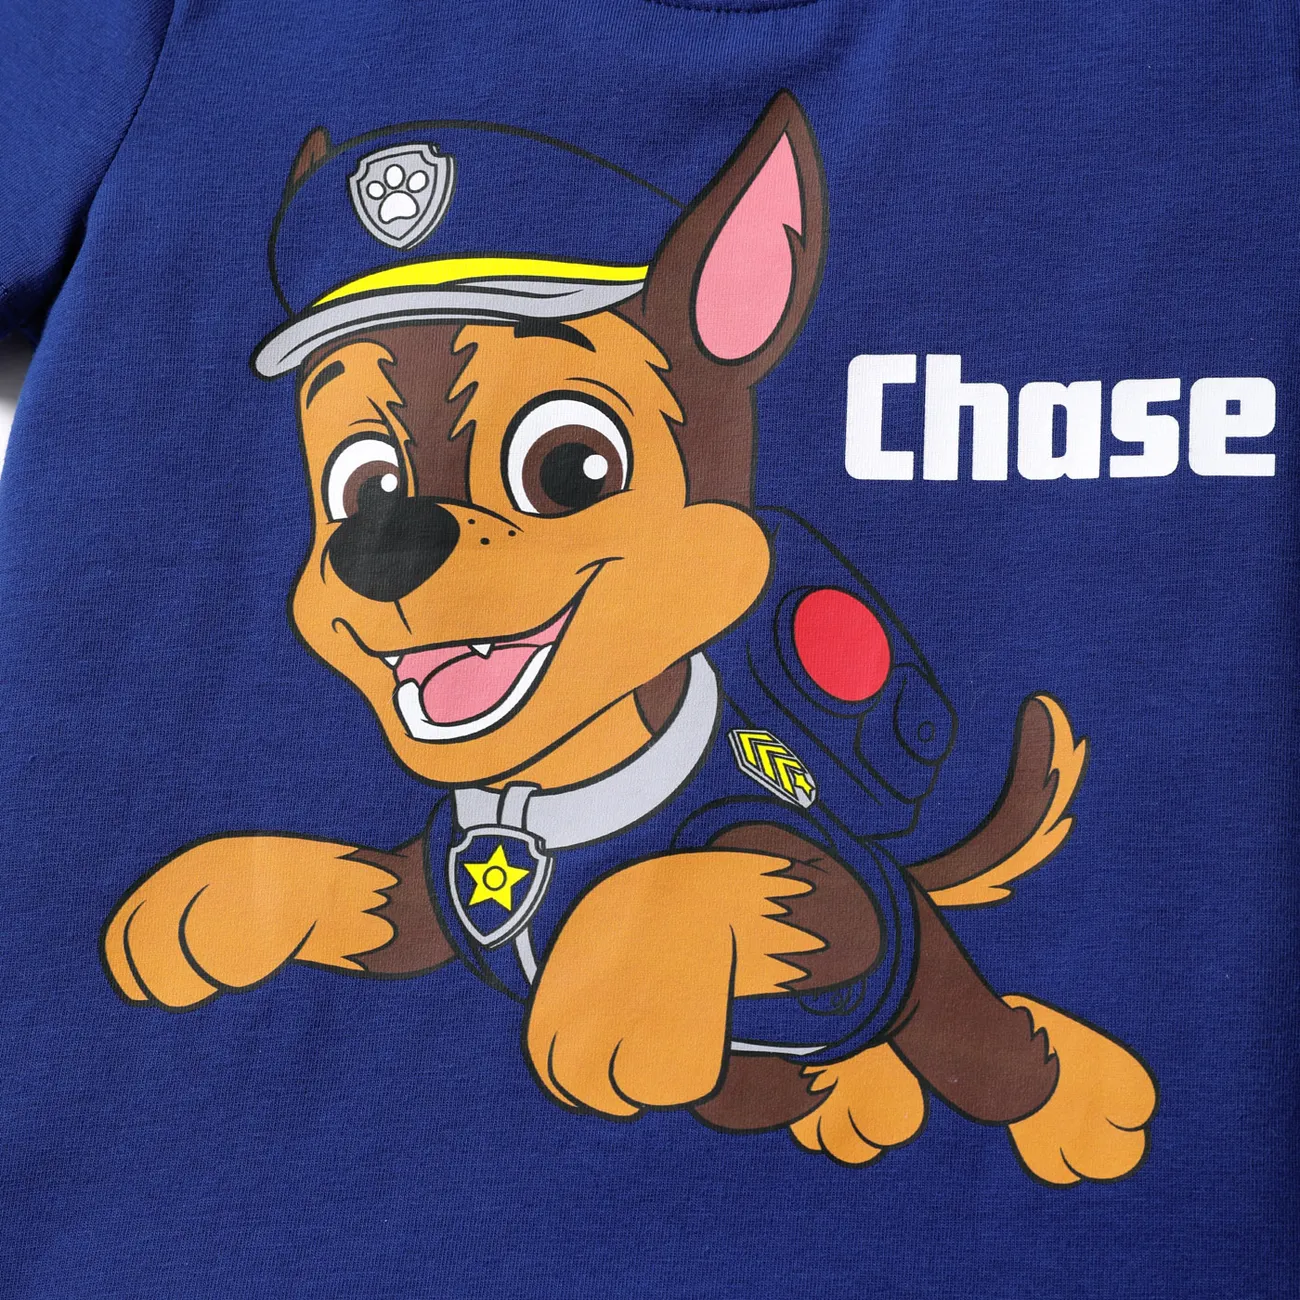 Patrulla de cachorros Pascua Niño pequeño Unisex Infantil Perro Manga corta Camiseta azul real big image 1